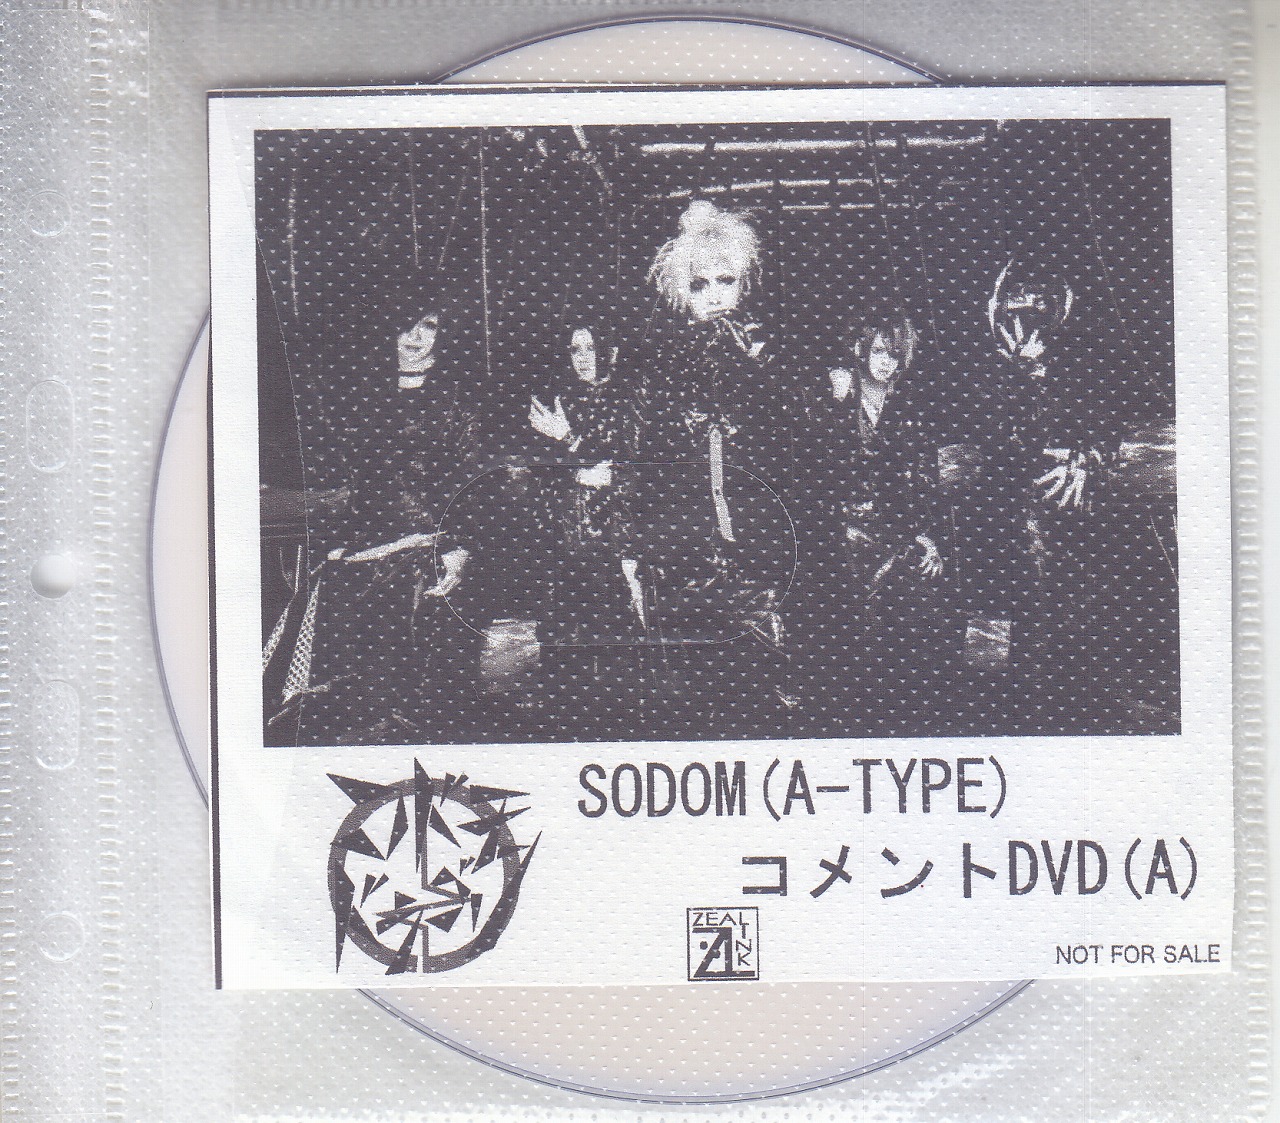 コドモドラゴン ( コドモドラゴン )  の DVD 【ZEAL LINK】SODOM(A-TYPE)コメントDVD